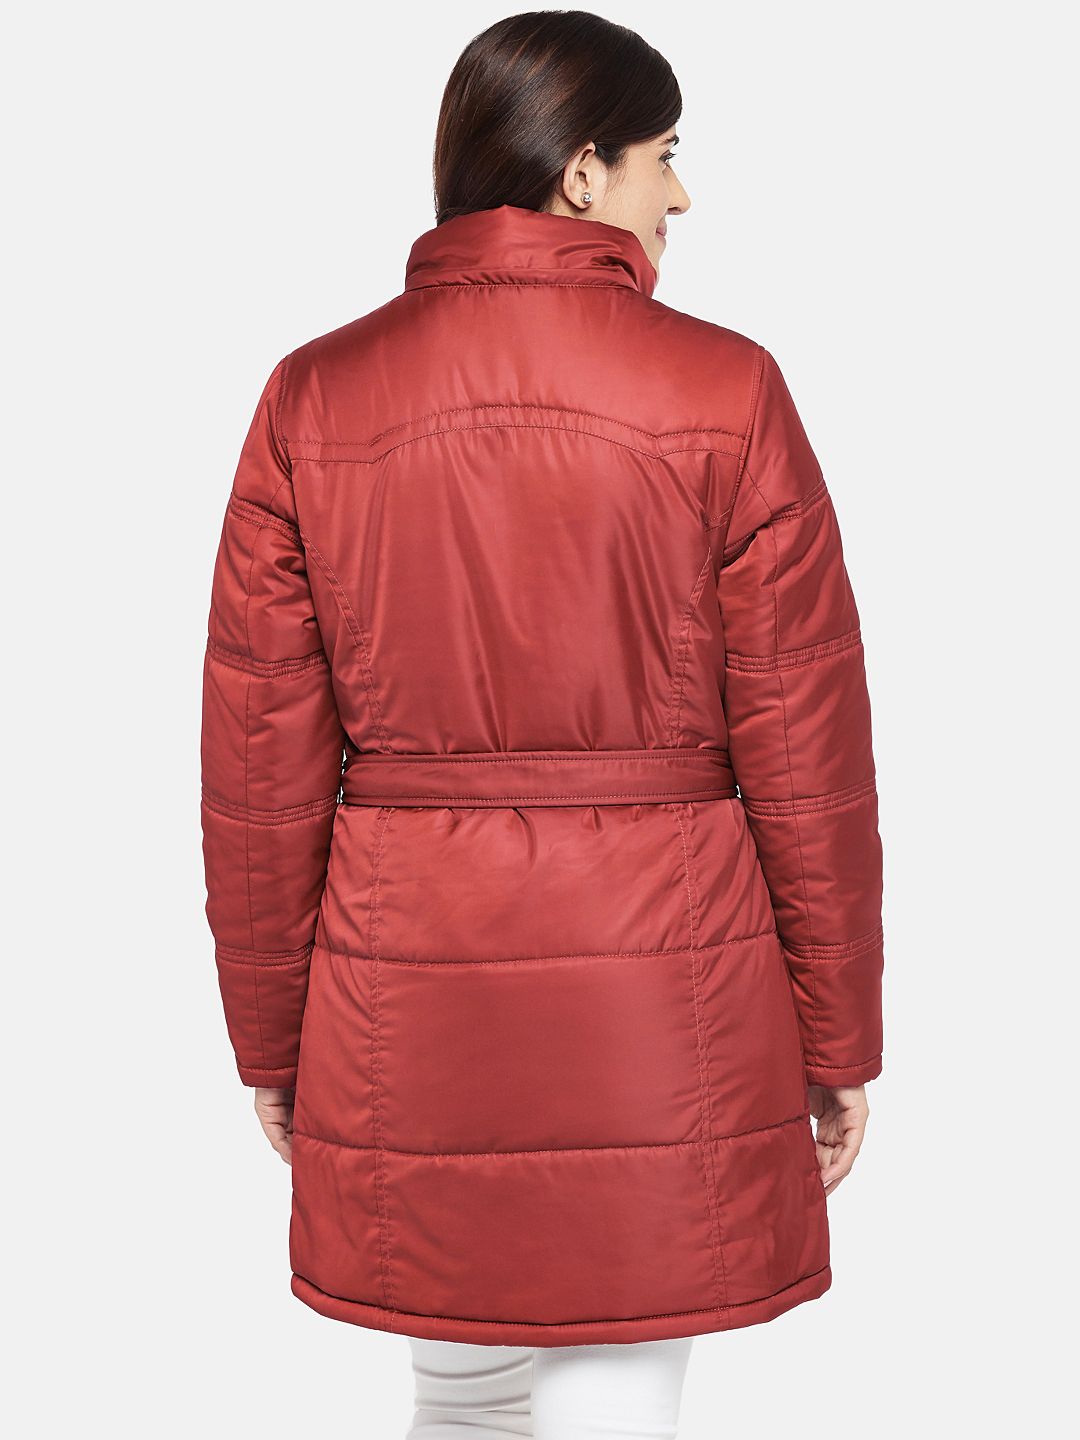 Red Fleece Lined Hooded Parka Jacket | Women